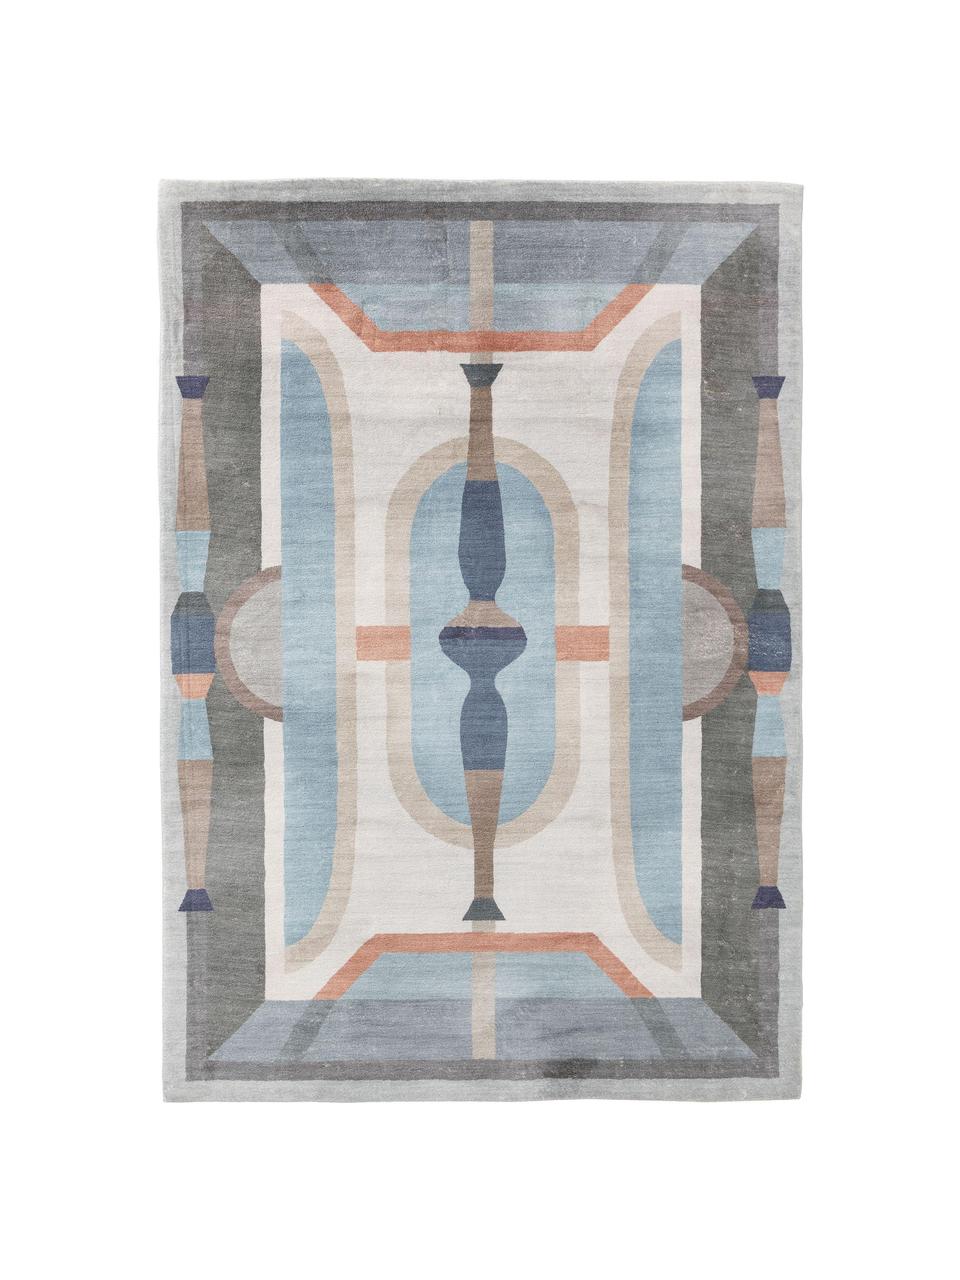 Gemusterter Teppich Mara in Blautönen, 100% Polyester, Blau, Mehrfarbig, B 160 x L 230 cm (Größe M)